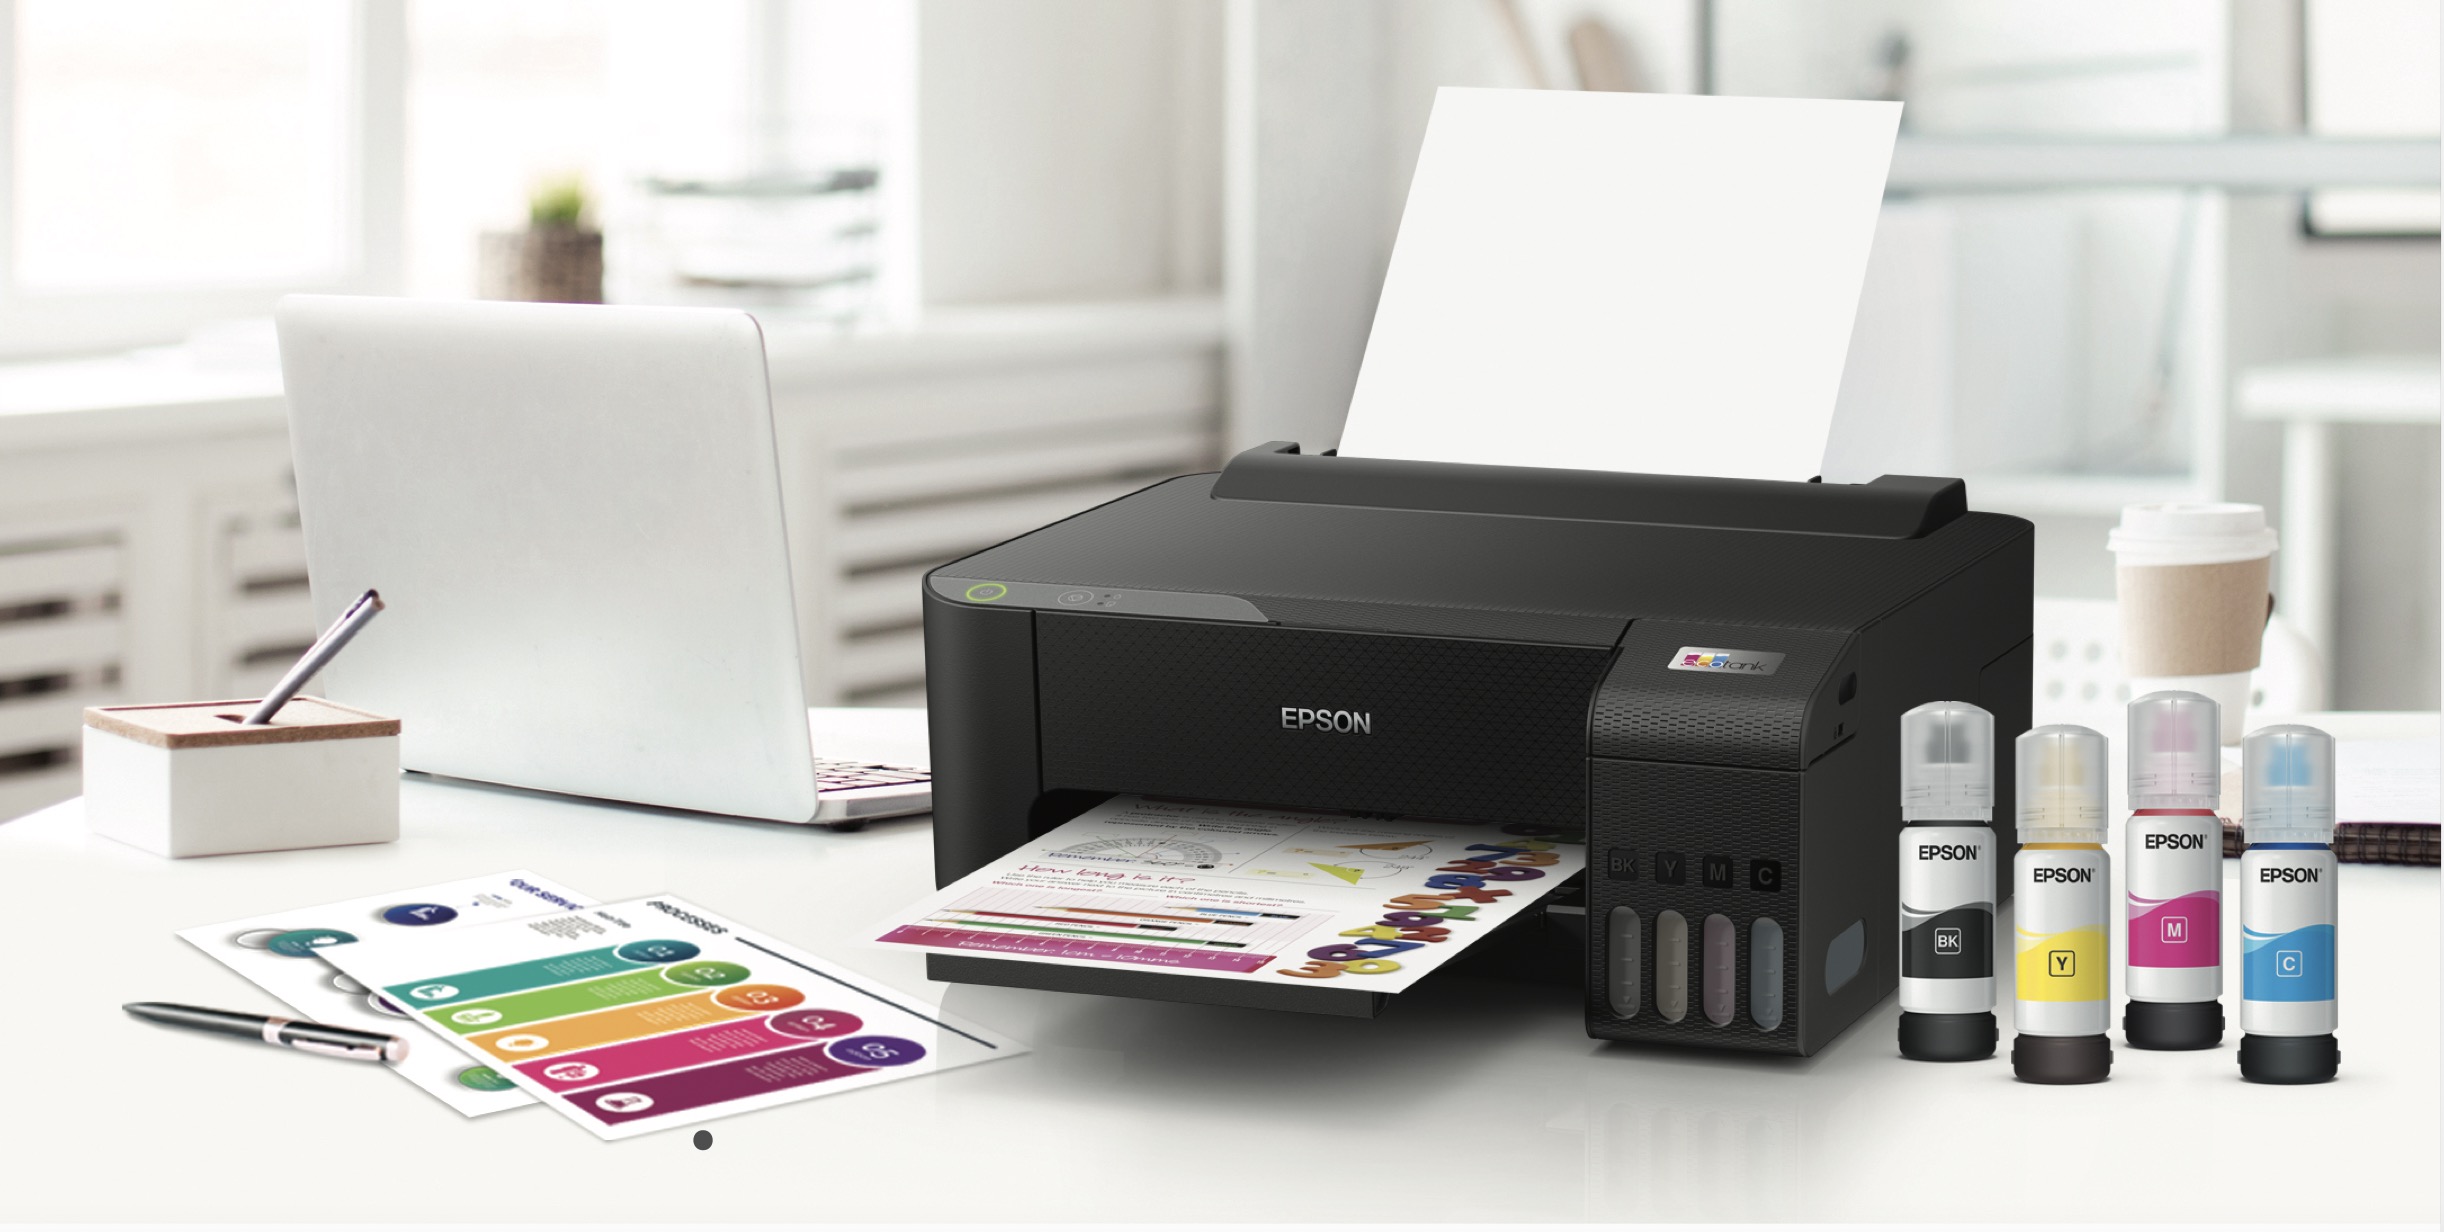 Epson ra mắt dòng máy in EcoTank thân thiện với môi trường và nâng cấp các chức năng in ấn hiệu suất cao